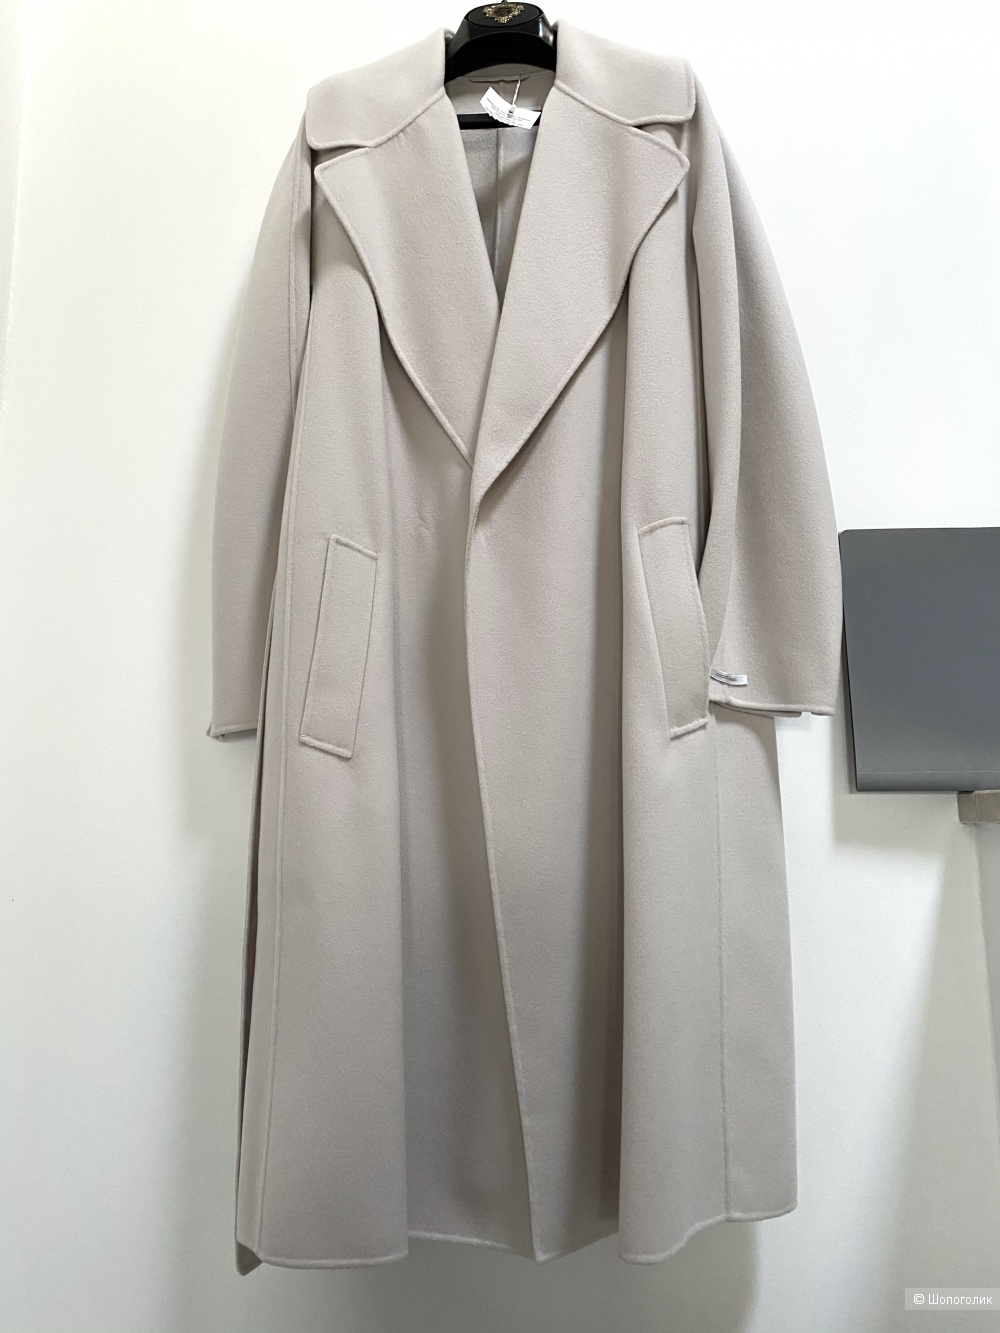 Пальто S.Max Mara размер 48-50-52